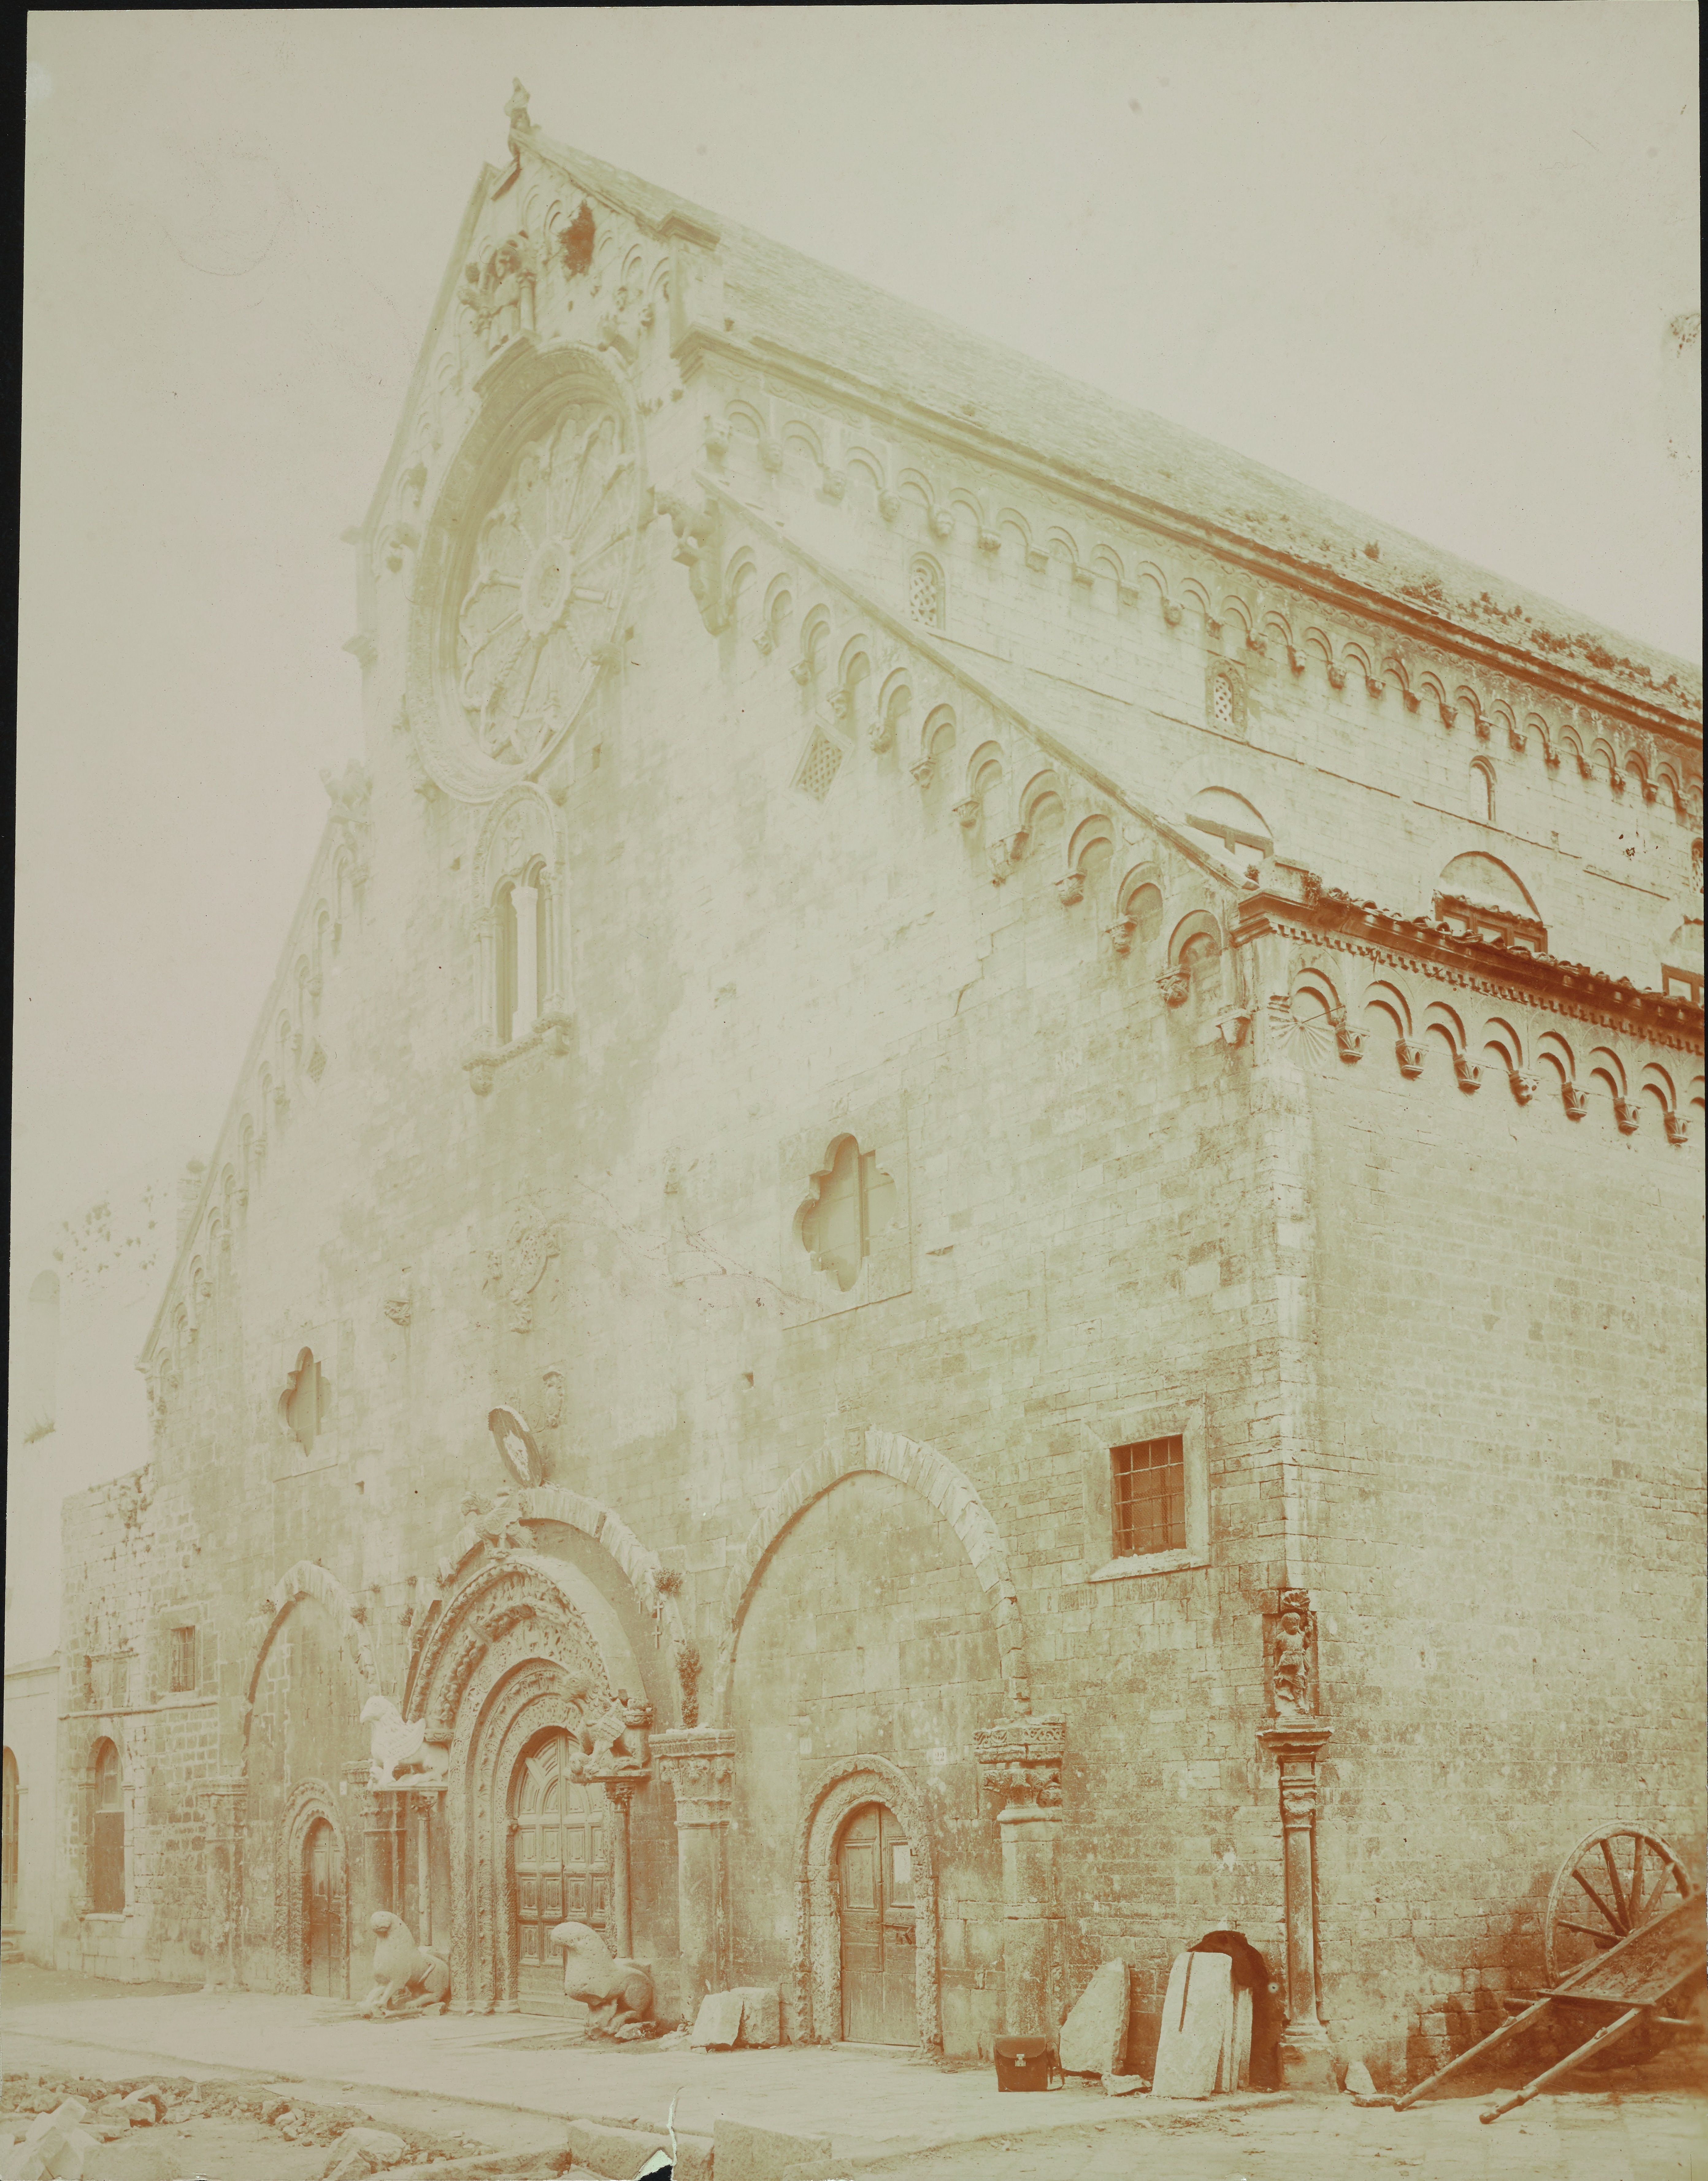 Fotografo non identificato, Ruvo di Puglia - Cattedrale S. Maria Assunta, facciata, 1901-1925, aristotipo, MPI6091649